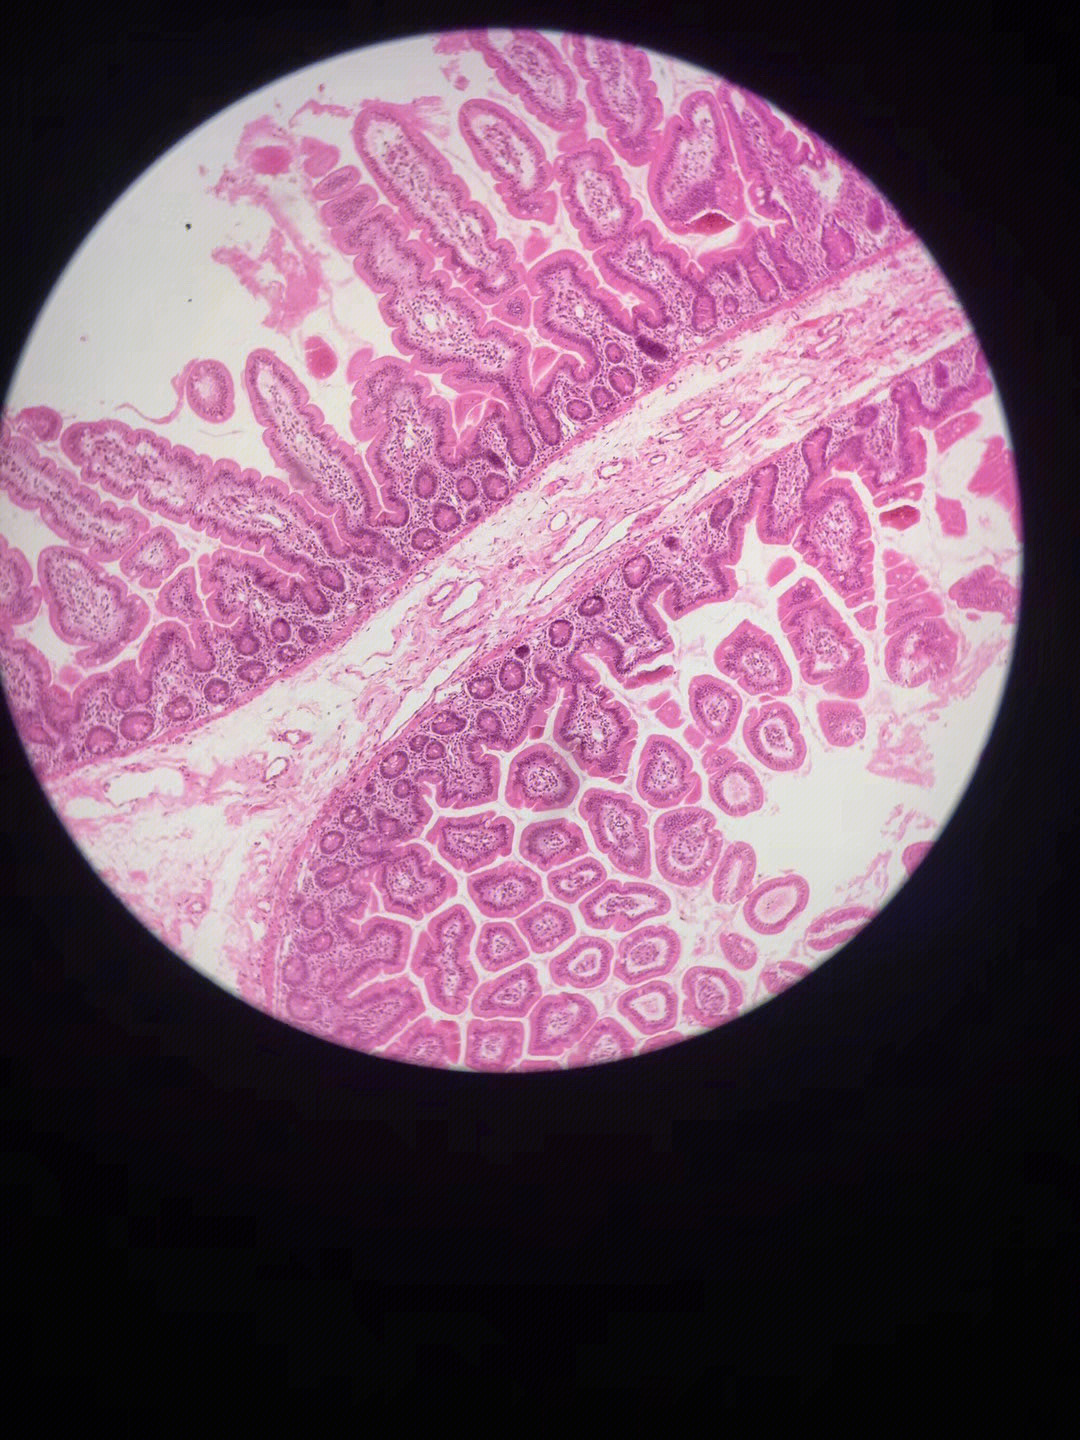 空肠显微镜下的结构图片